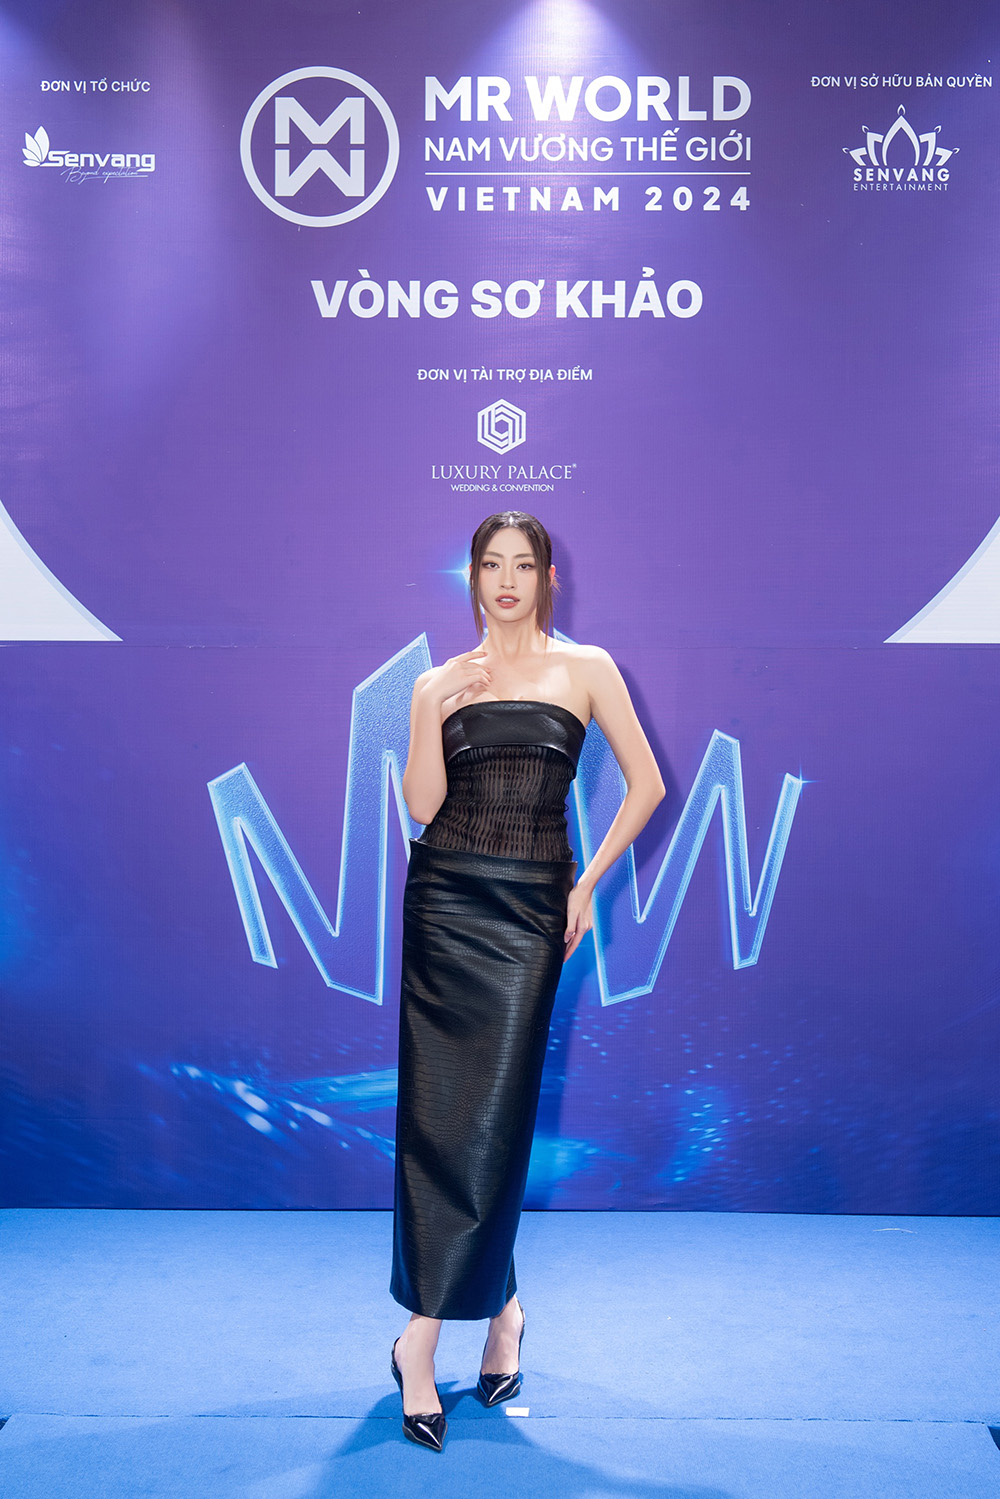 Dàn hậu đến vòng sơ khảo Mr World Vietnam 2024 ủng hộ các thí sinh